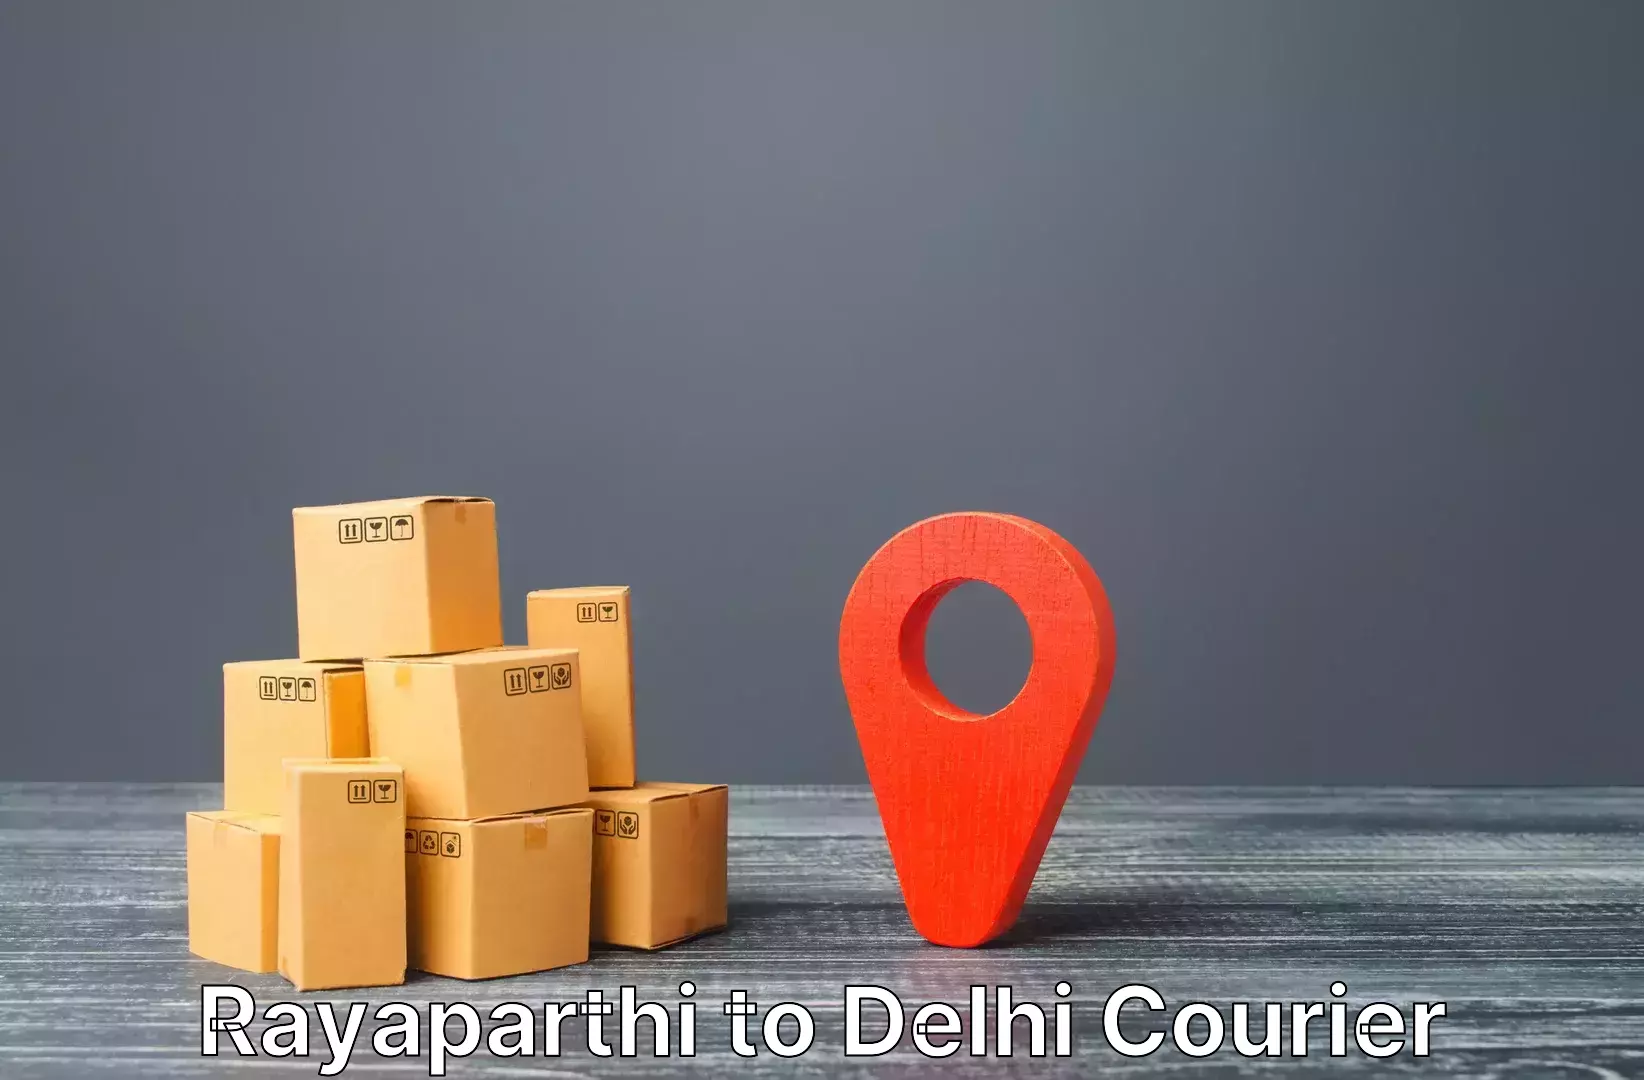 Fast track baggage delivery Rayaparthi to Ashok Vihar